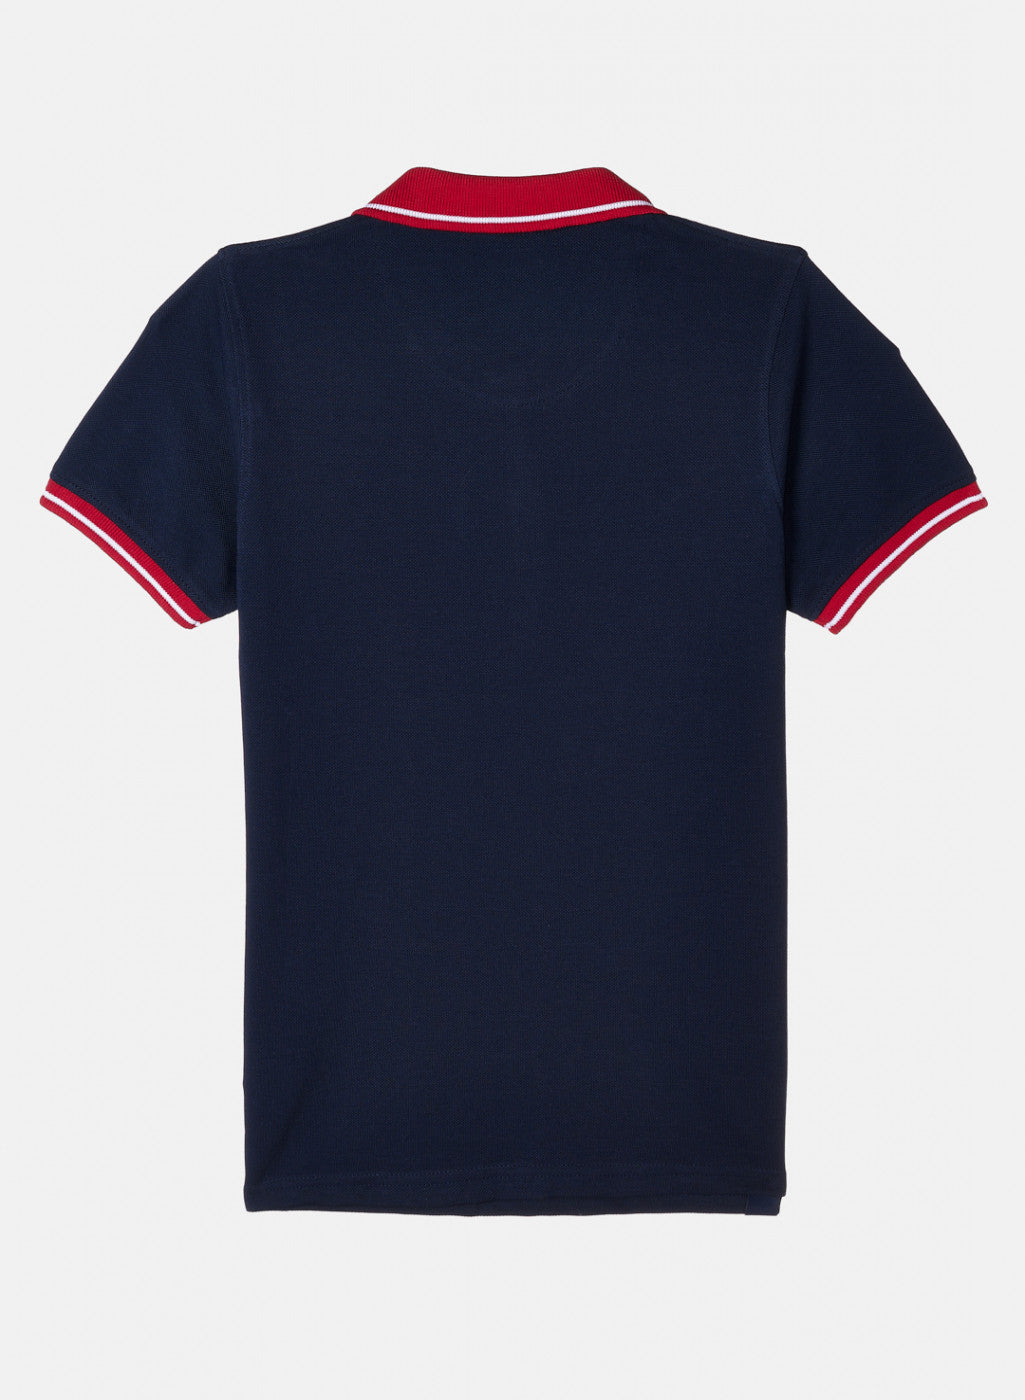 Navy Polo Shirt for Men - Backside